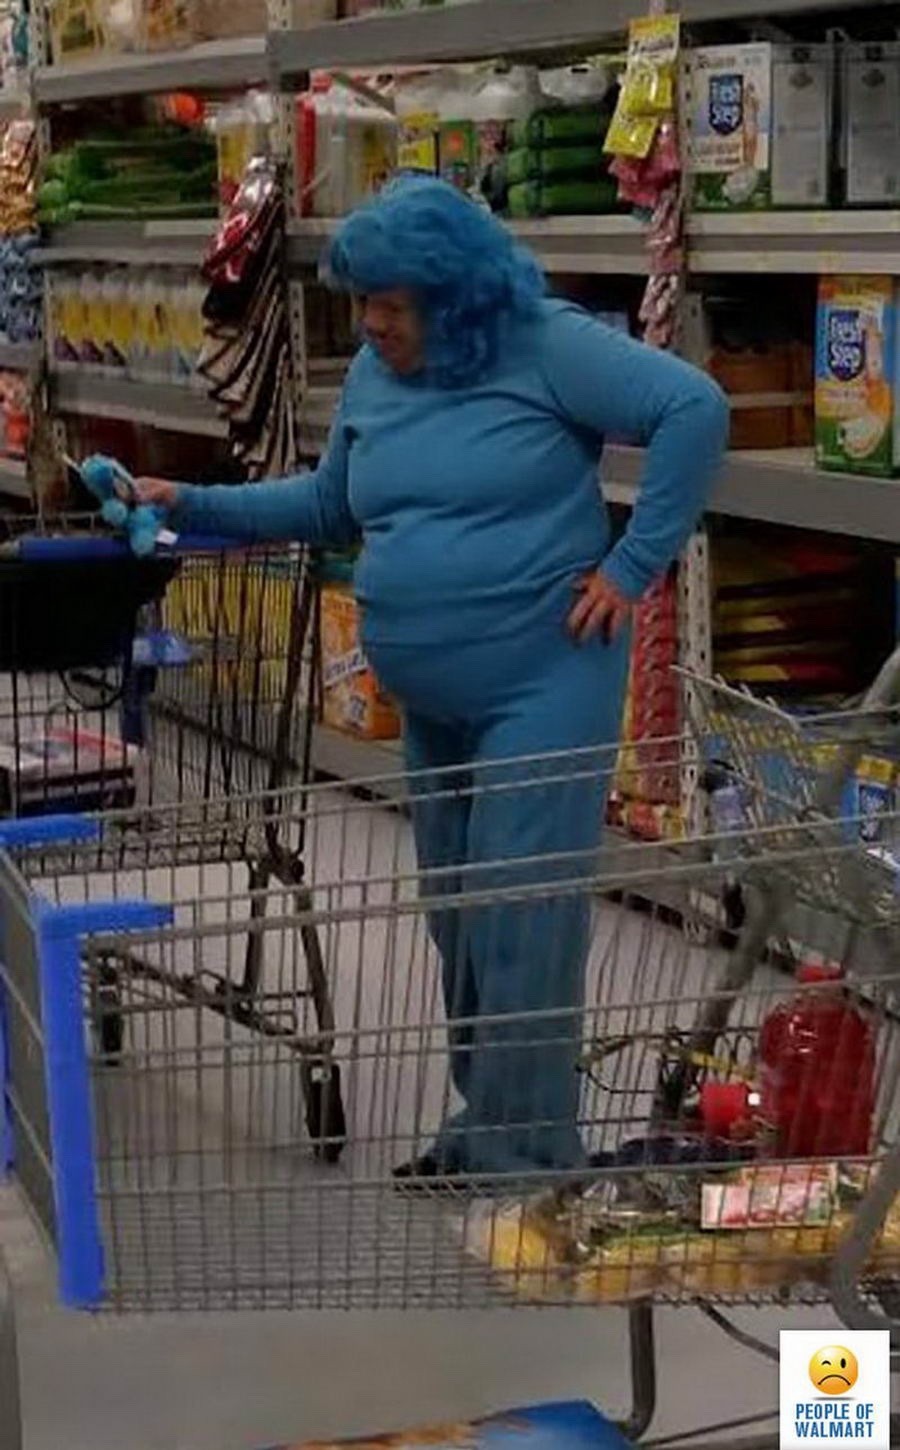 Walmart shopper in their blue phase. - meme